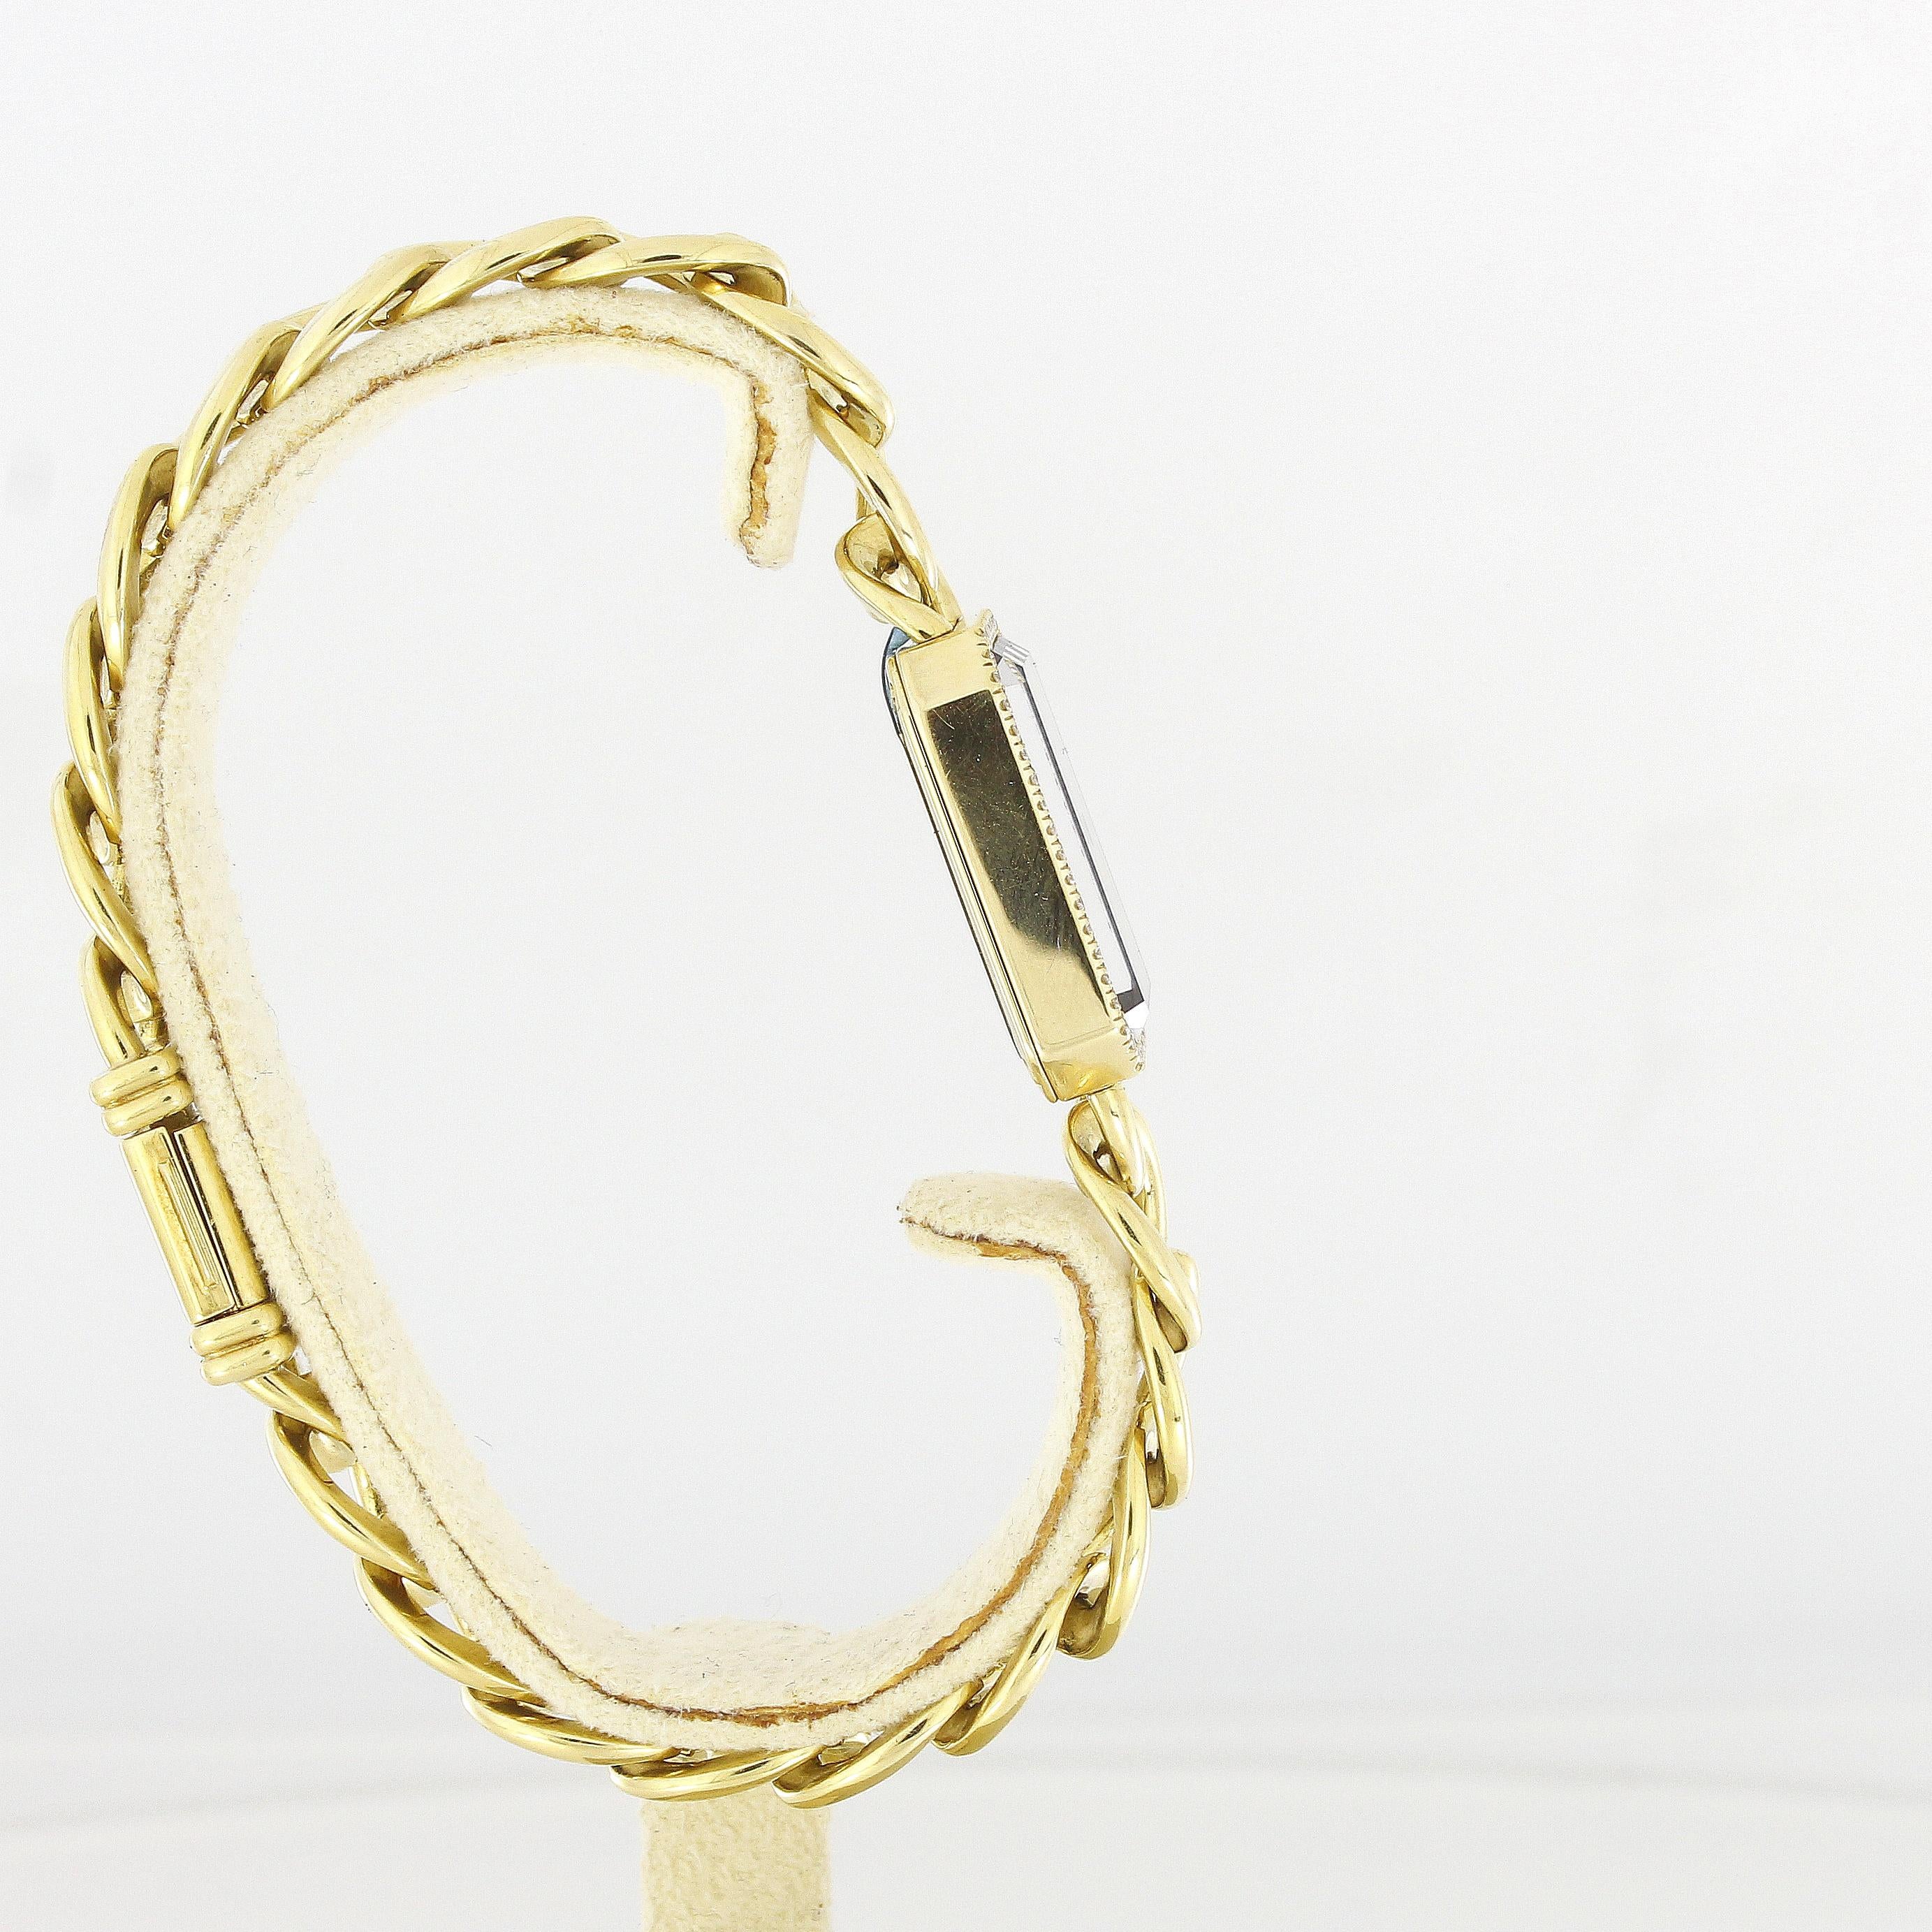 Brilliant Cut Chanel Première Ladies Wristwatch H3258 Yellow Gold Diamonds For Sale